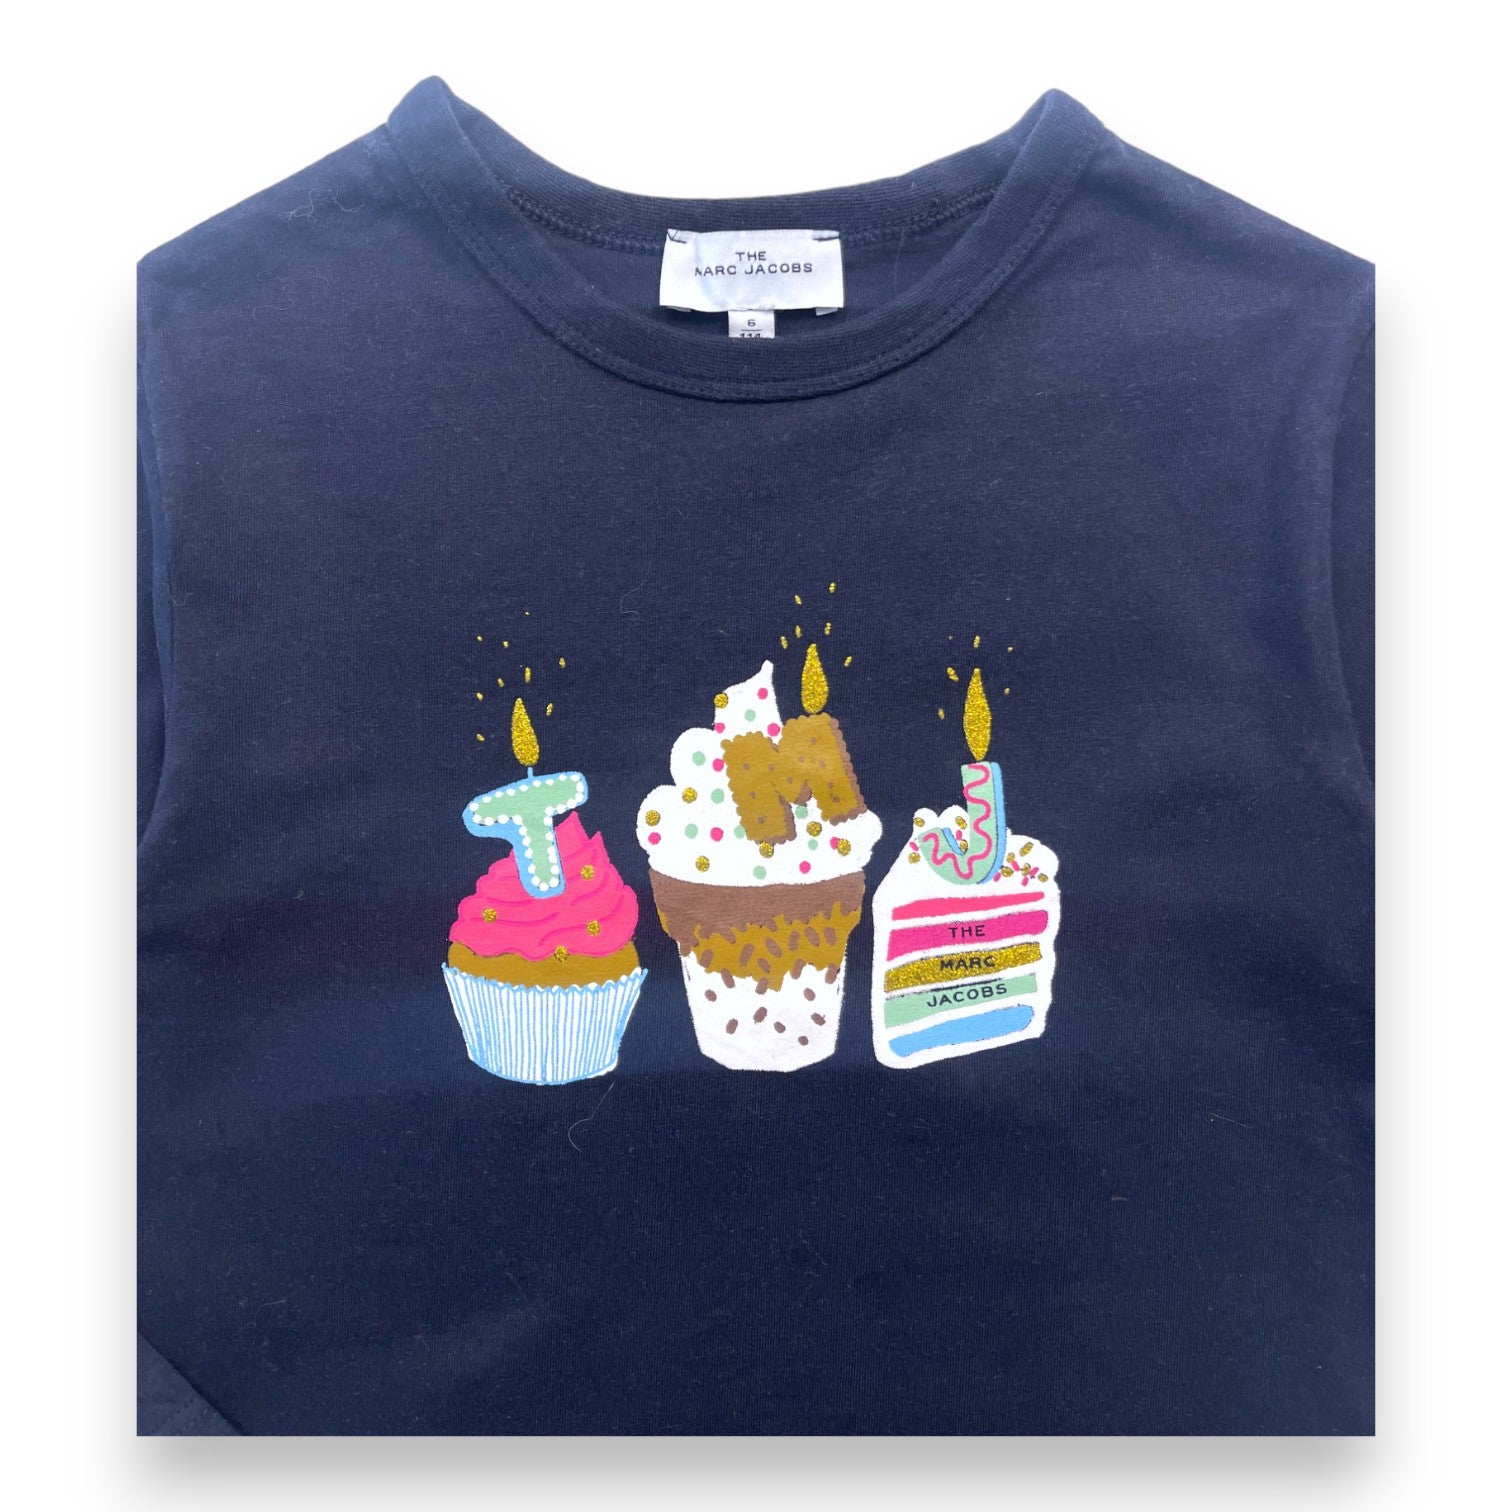 THE MARC JACOBS - T shirt manches longues bleu marine à imprimé anniversaire - 6 ans